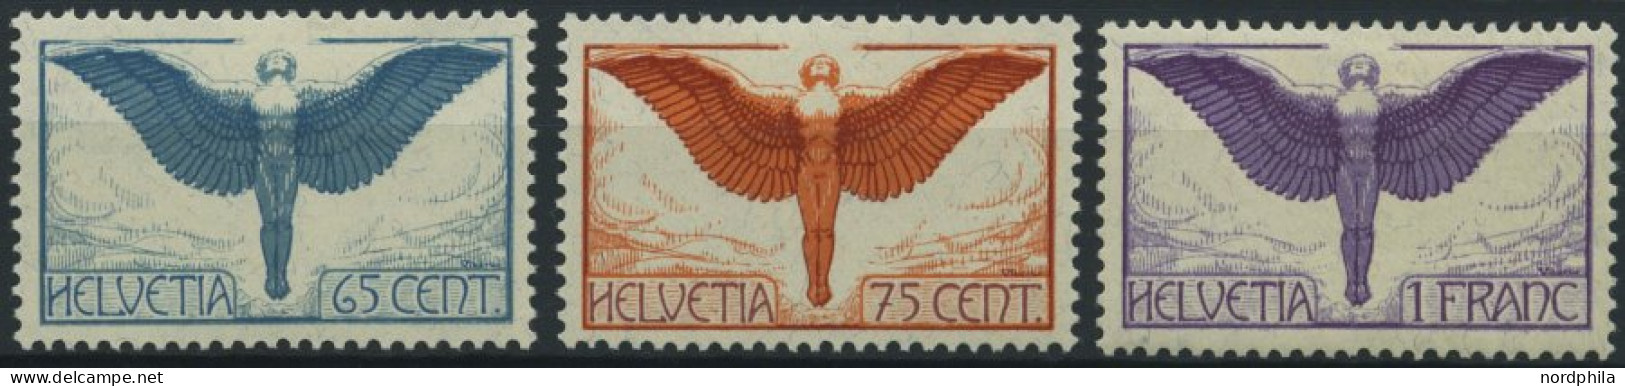 SCHWEIZ BUNDESPOST 189-91x *, 1924, Flugpostmarken, Gewöhnliches Papier, Falzrest, Prachtsatz - Nuovi